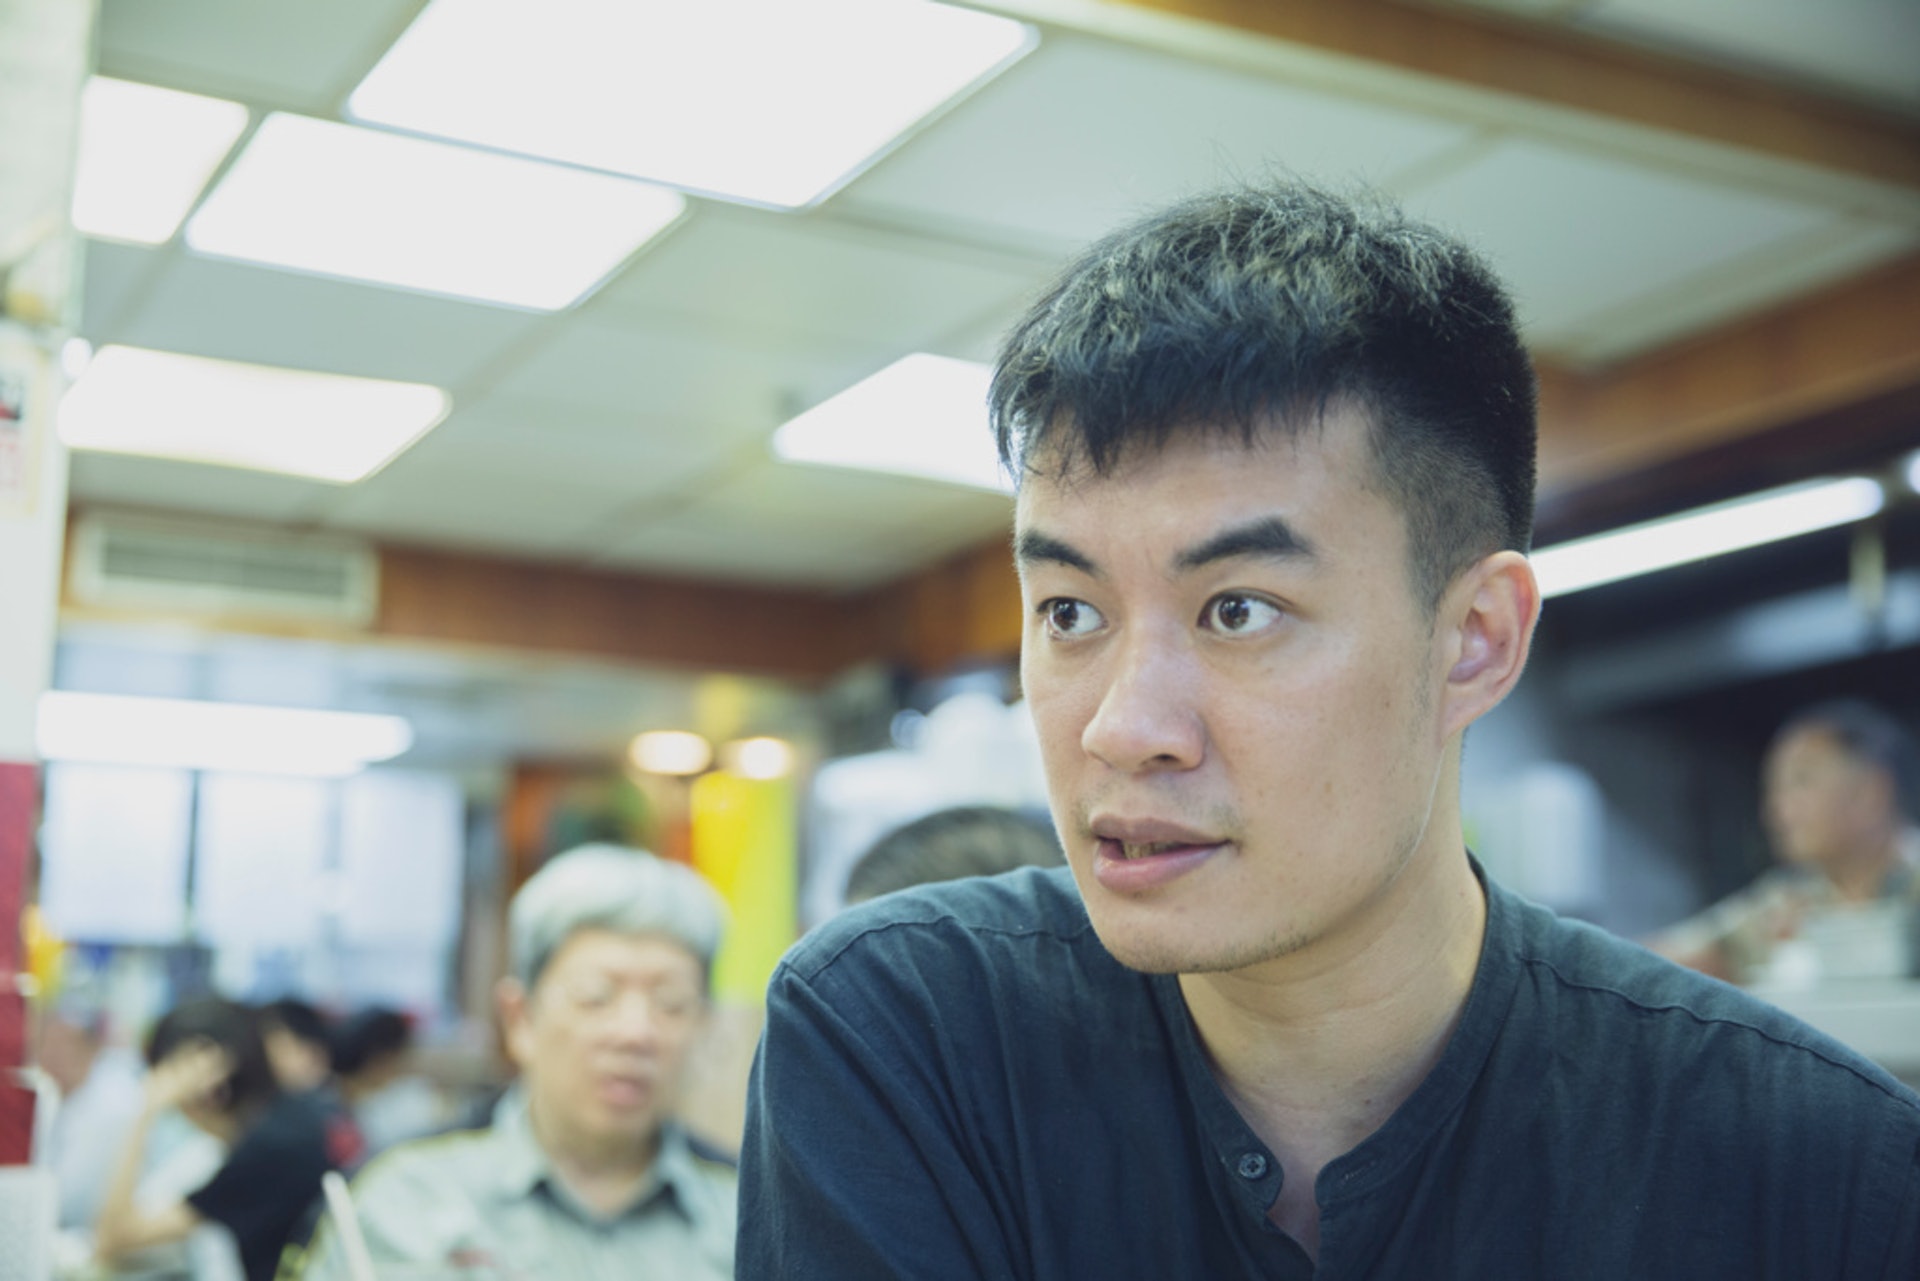 李俊峰說，他並不是要批判支聯會及司徒華，而是因為騷亂事件十分複雜，應深入分析和解構。